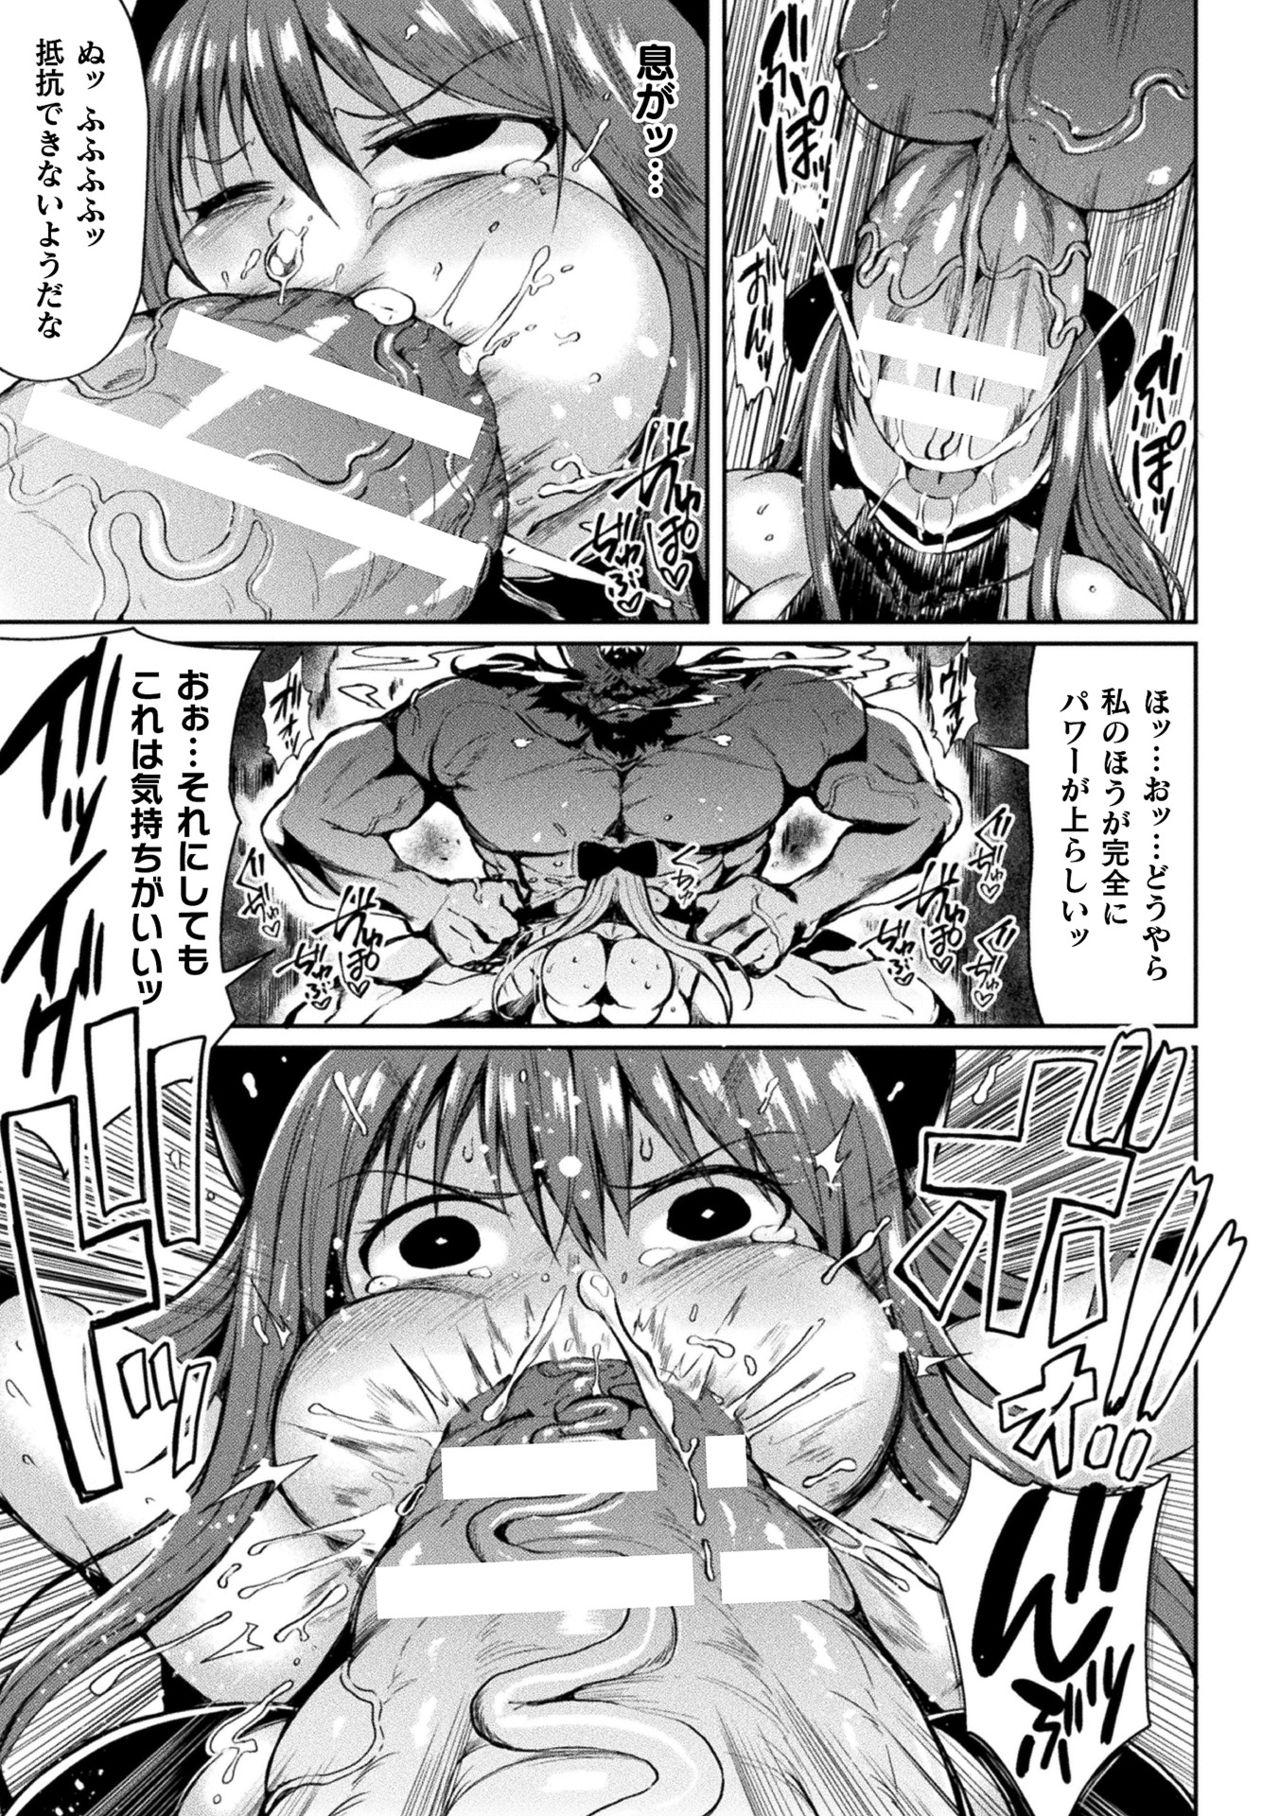 2D Comic Magazine Mesugaki Henshin Heroine Seisai Wakarase-bou ni wa Katemasen deshita! Vol. 2 51